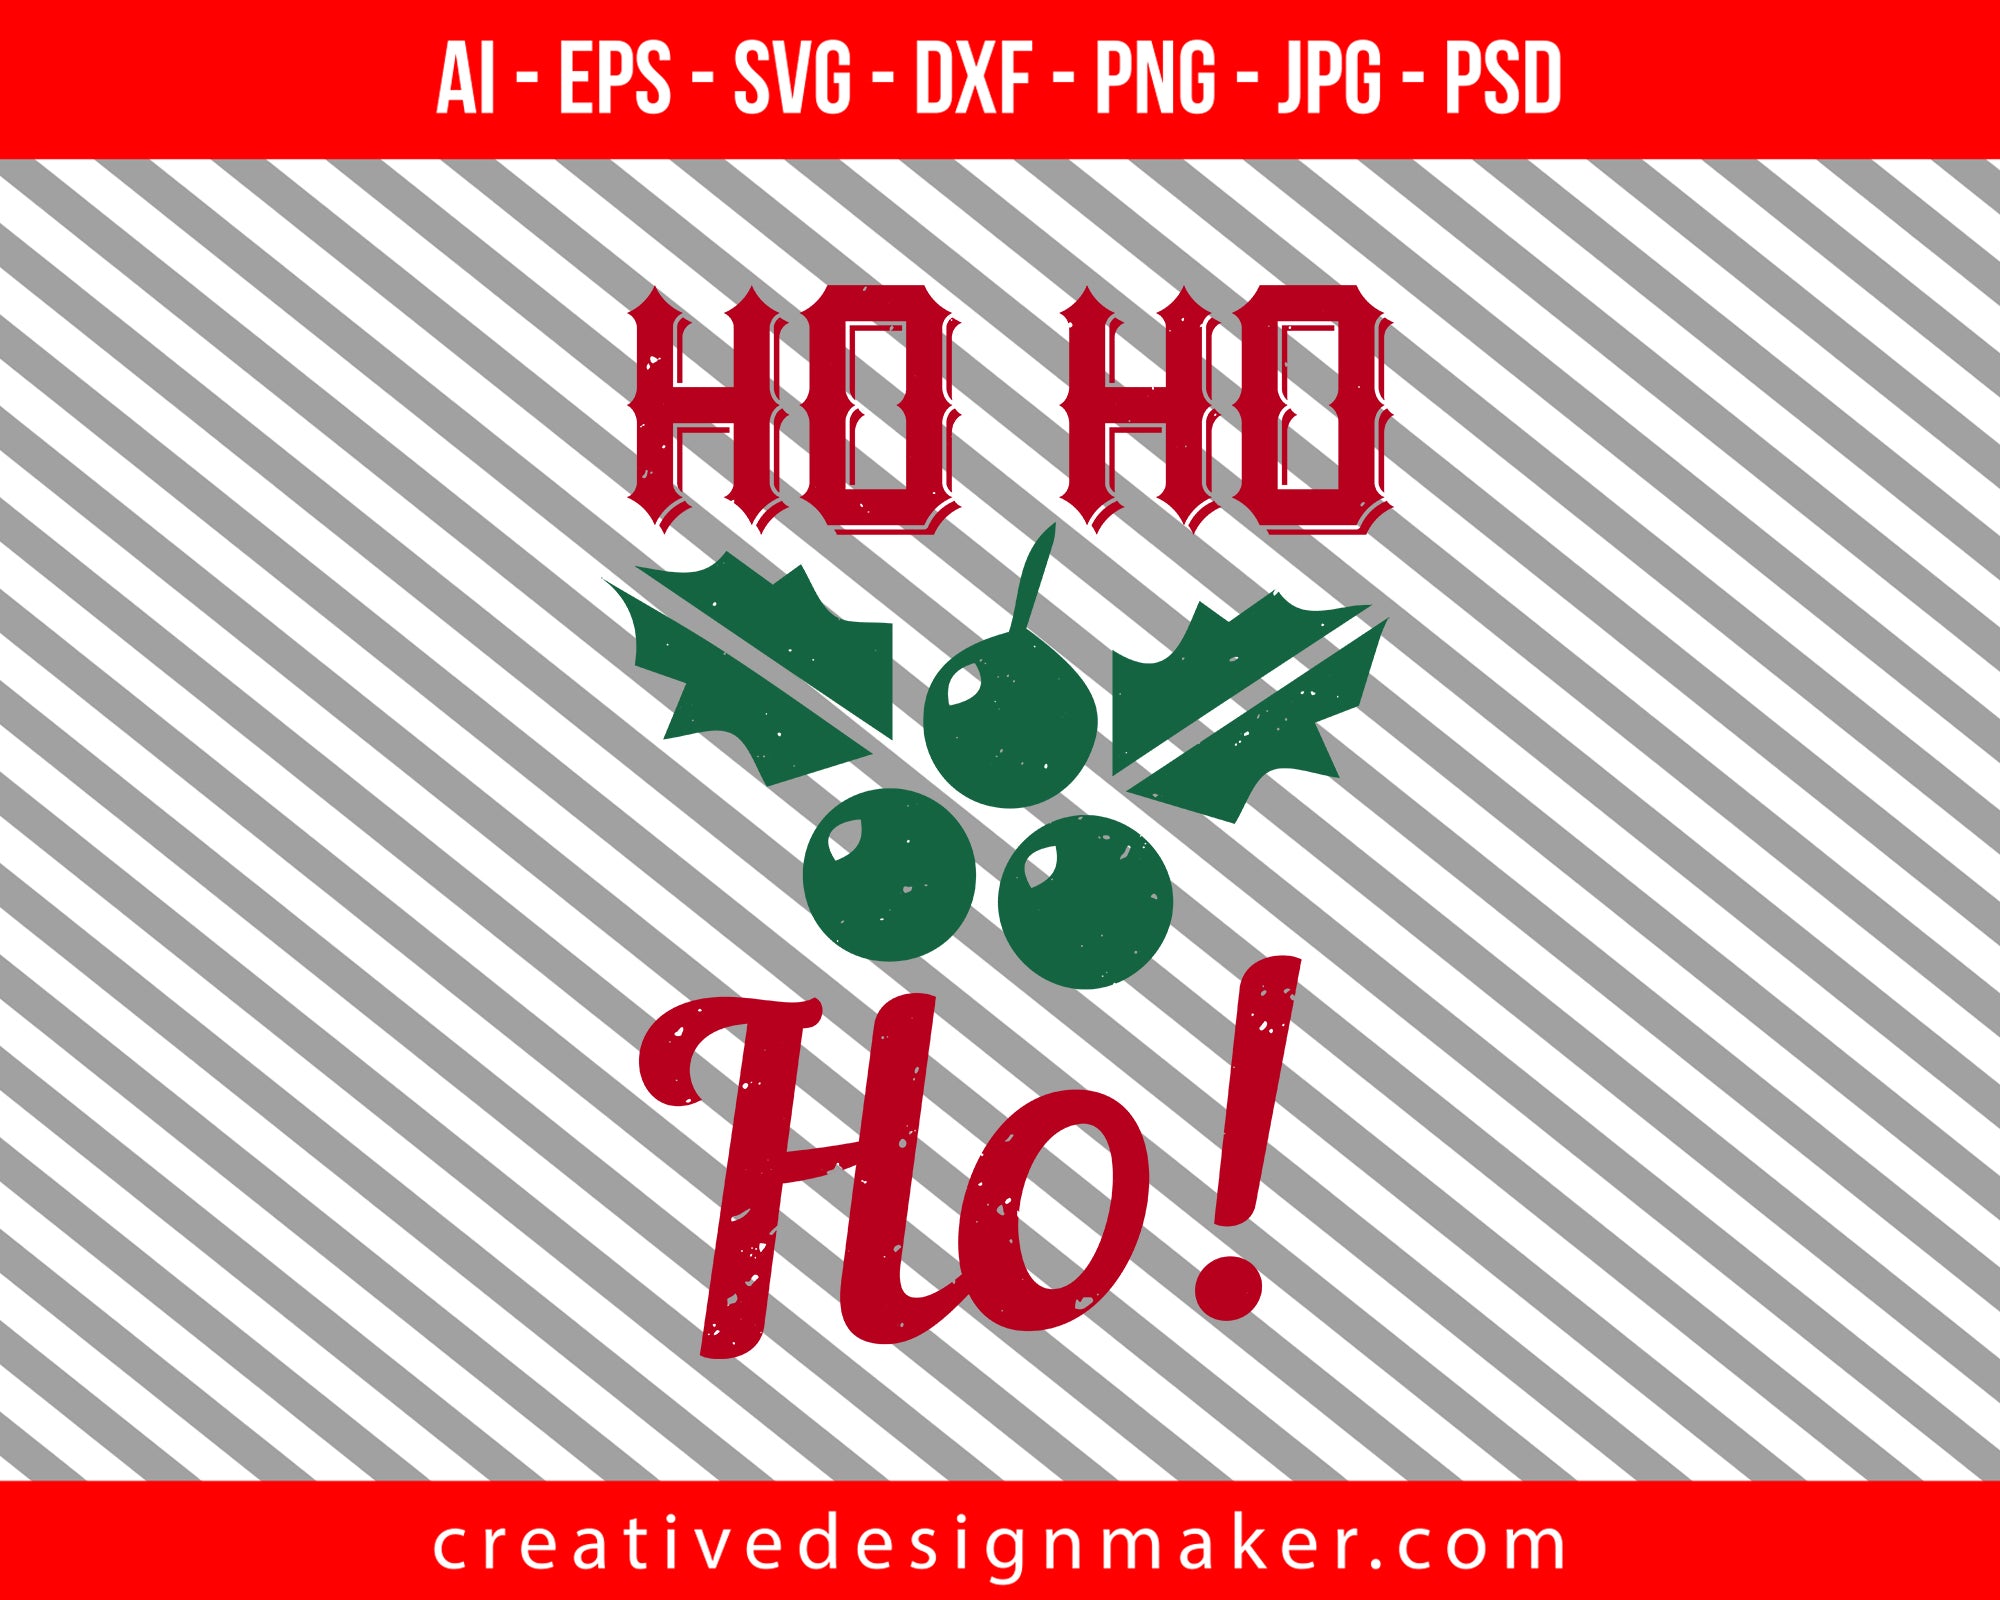 ho ho ho! Christmas Print Ready Editable T-Shirt SVG Design!